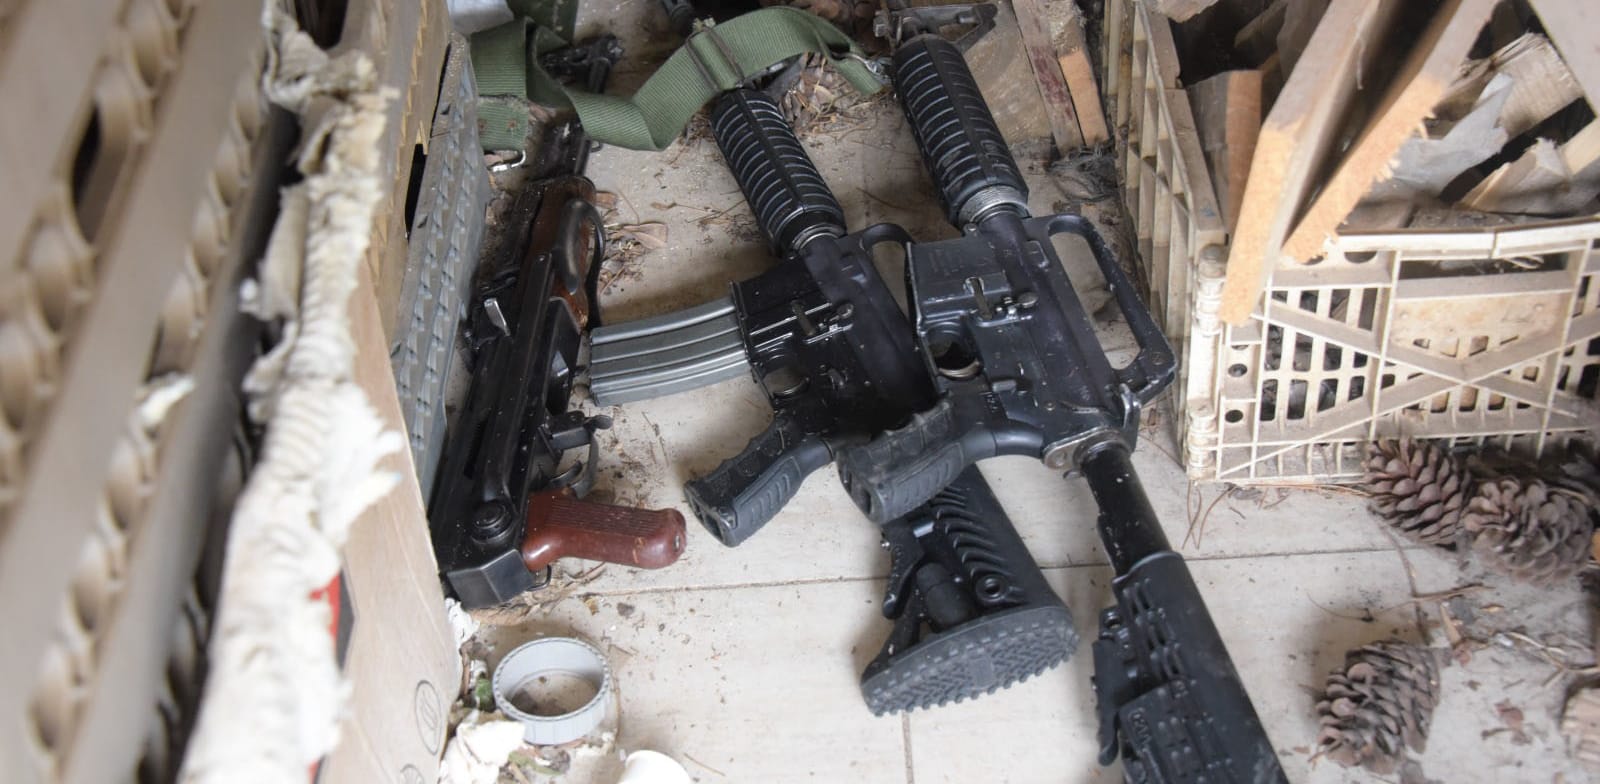 כלי הנשק שנתפסו בכפר כנא / צילום: דוברות המשטרה